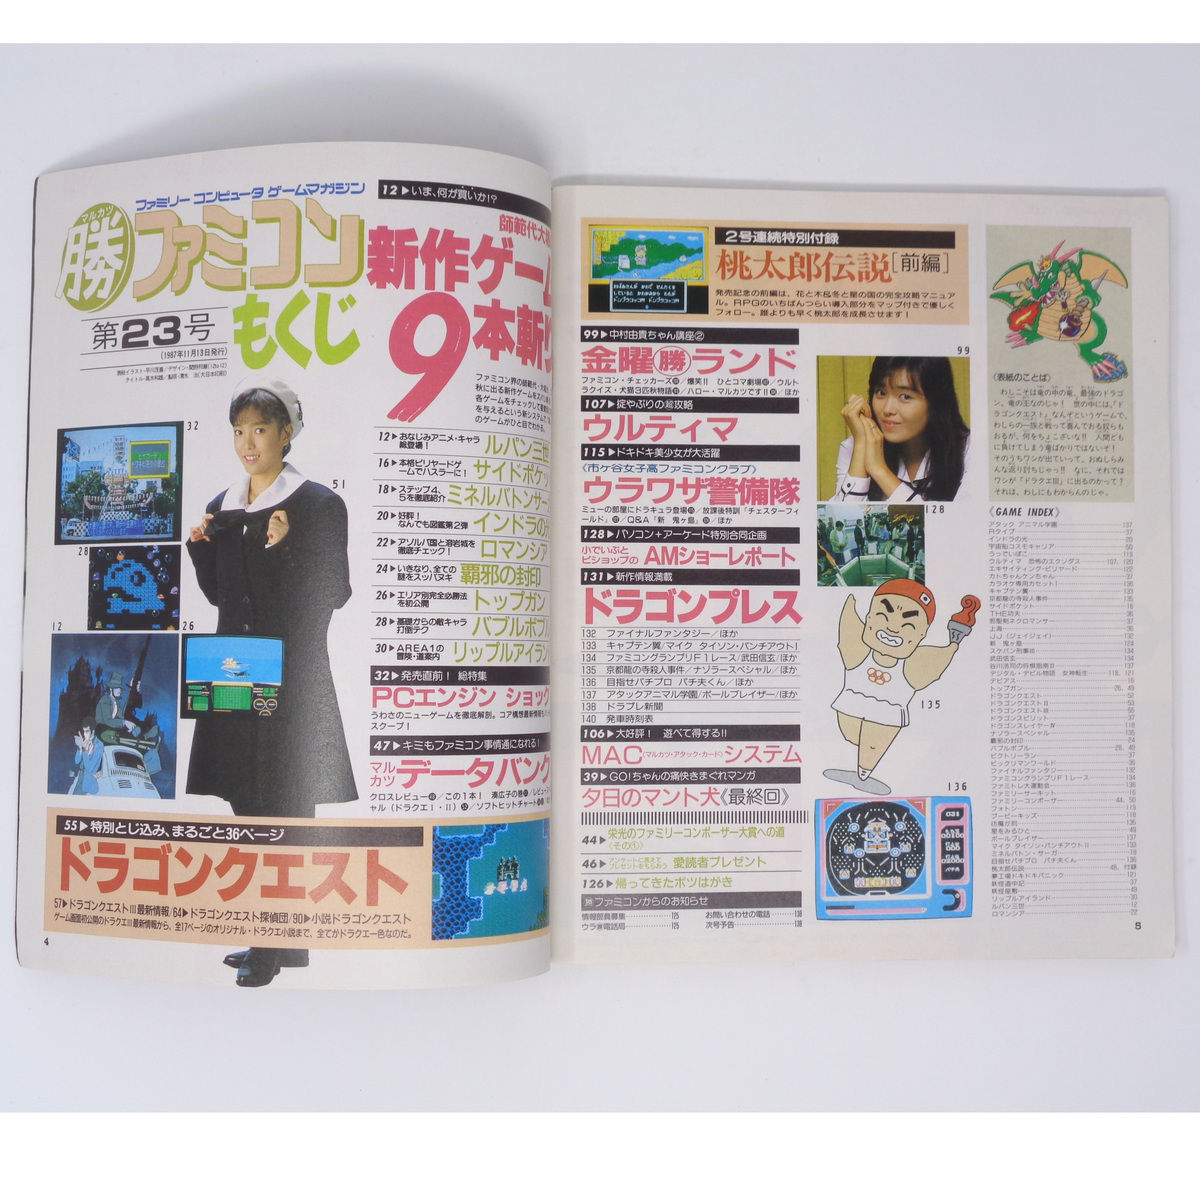 [Free Shipping]ma LUKA tsu maru . Famicom 1987 год 11 месяц 23 день номер Vol.23 дополнение нет,MAC карта нет / Dragon Quest специальный номер /DQ3 игра журнал 